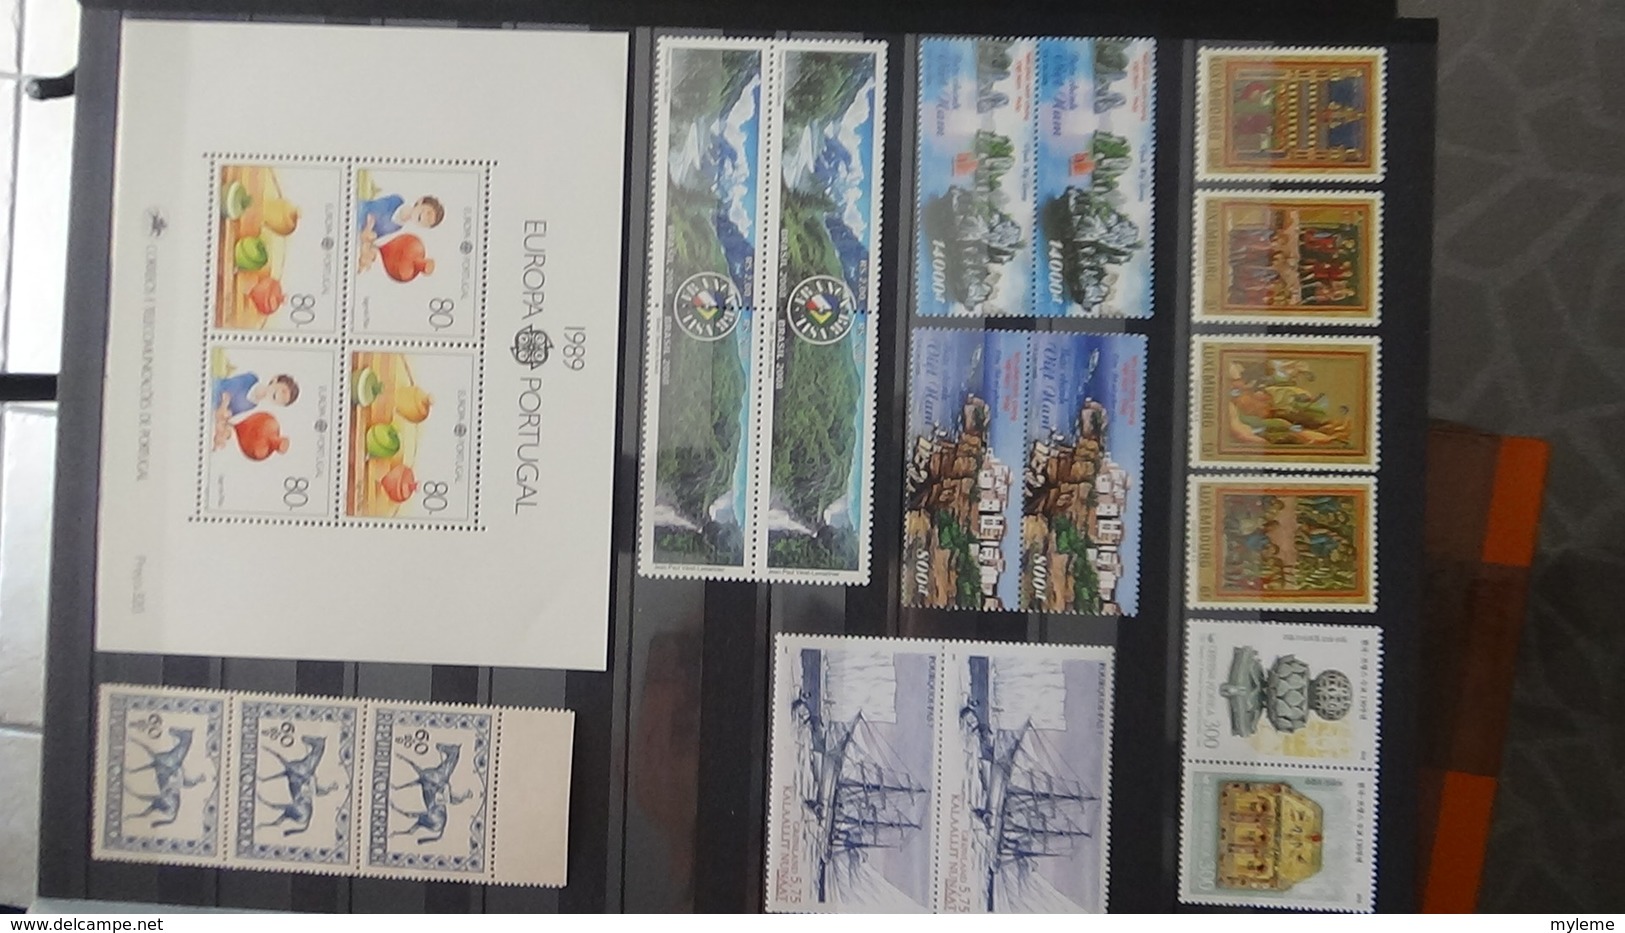 Belle collection de timbres et blocs ** du monde dont belle thématique sur les champignons. Très sympa !!!